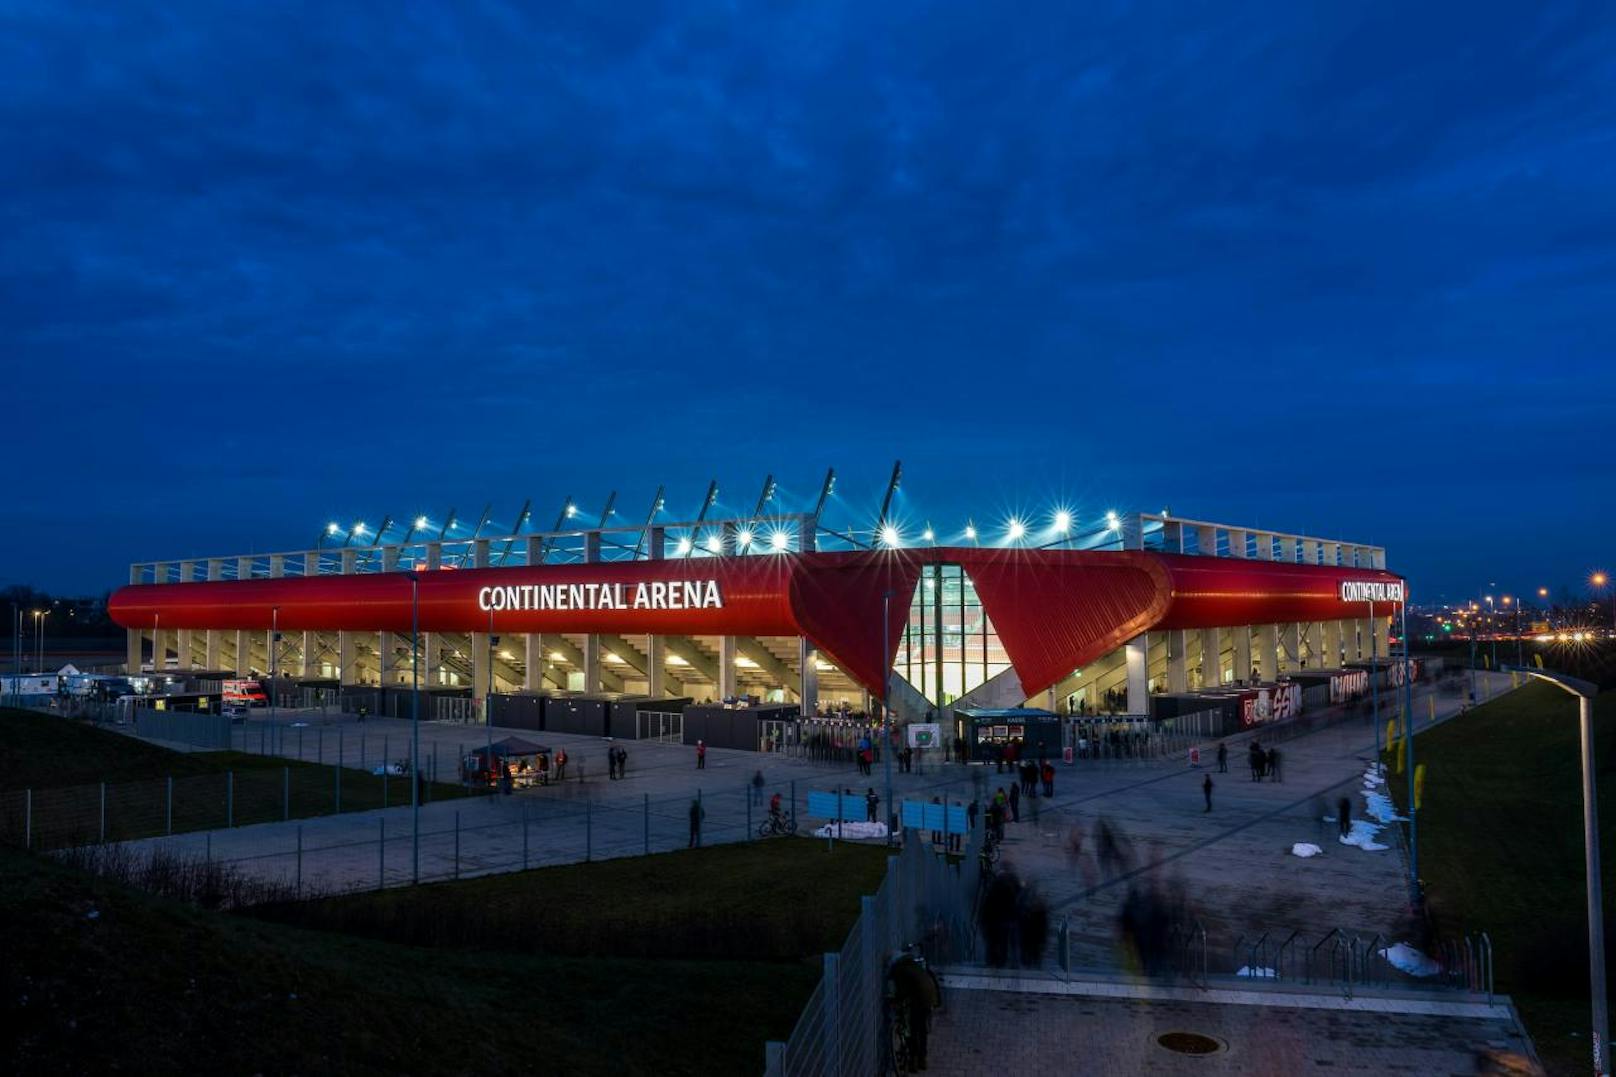 Die Regensburg-Arena soll als Vorbild für das neue LASK-Stadion dienen.